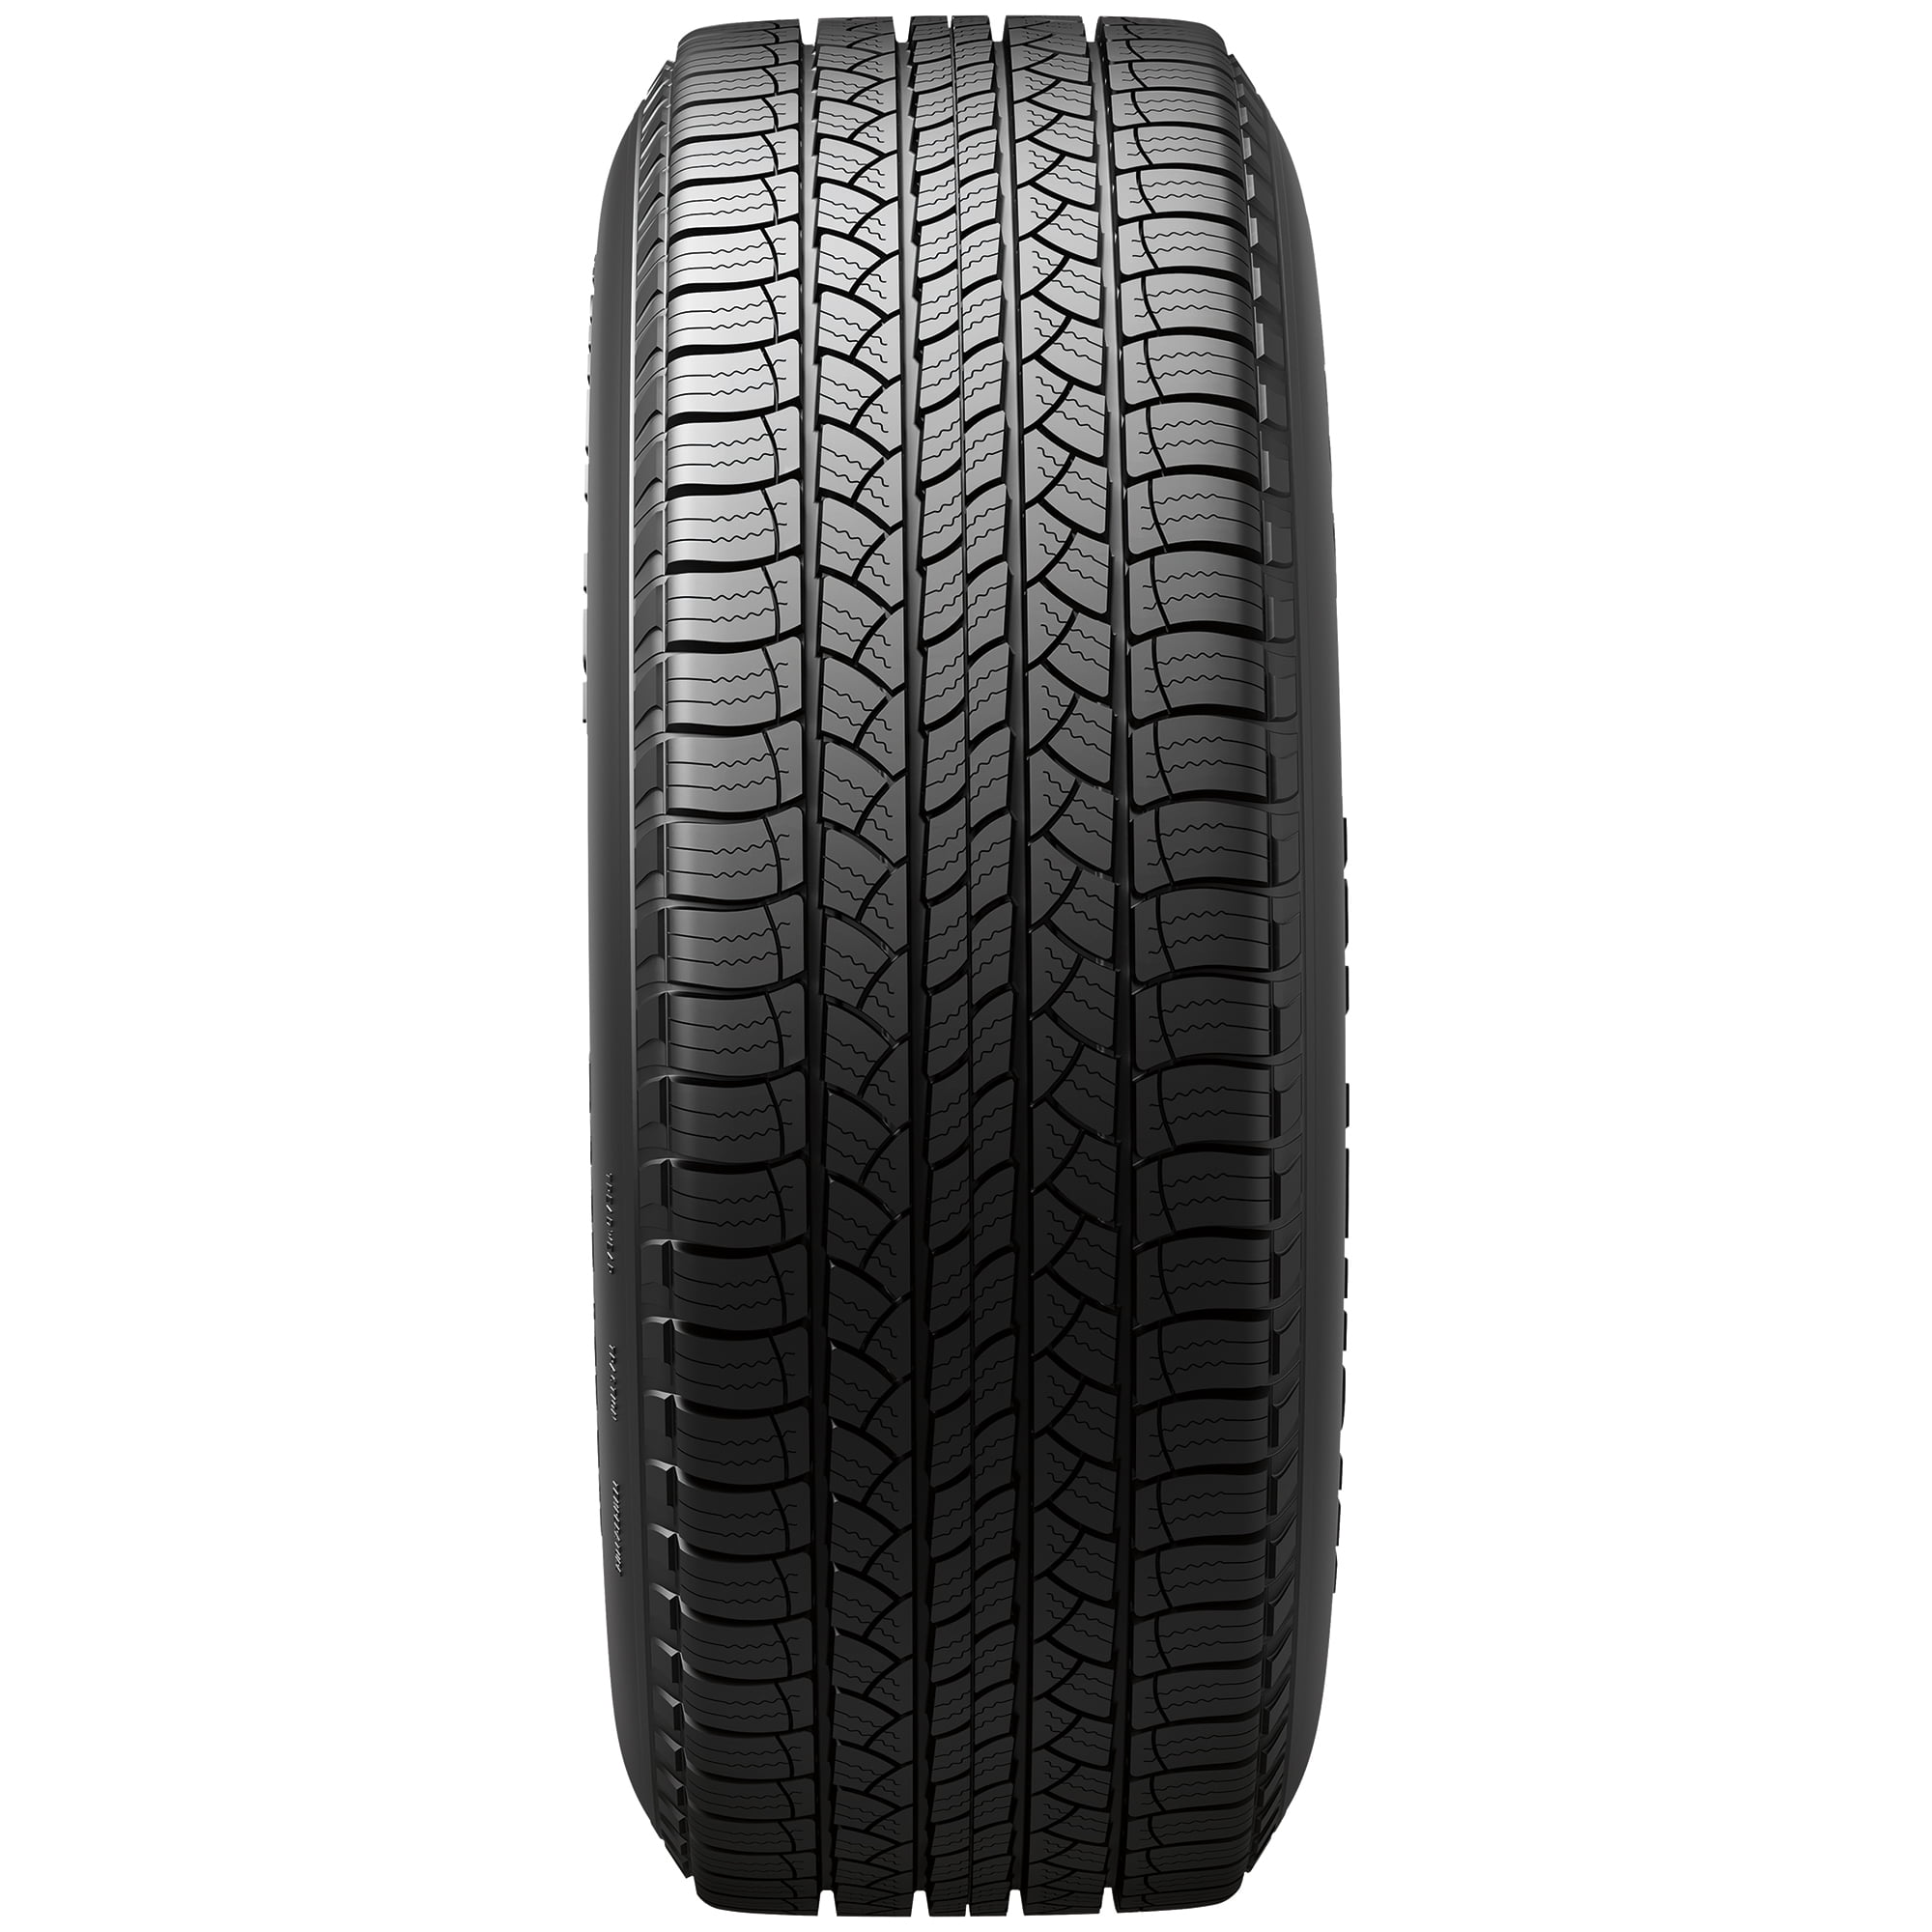 Michelin Latitude Tour 265/65R17 110 T Tire - Walmart.com